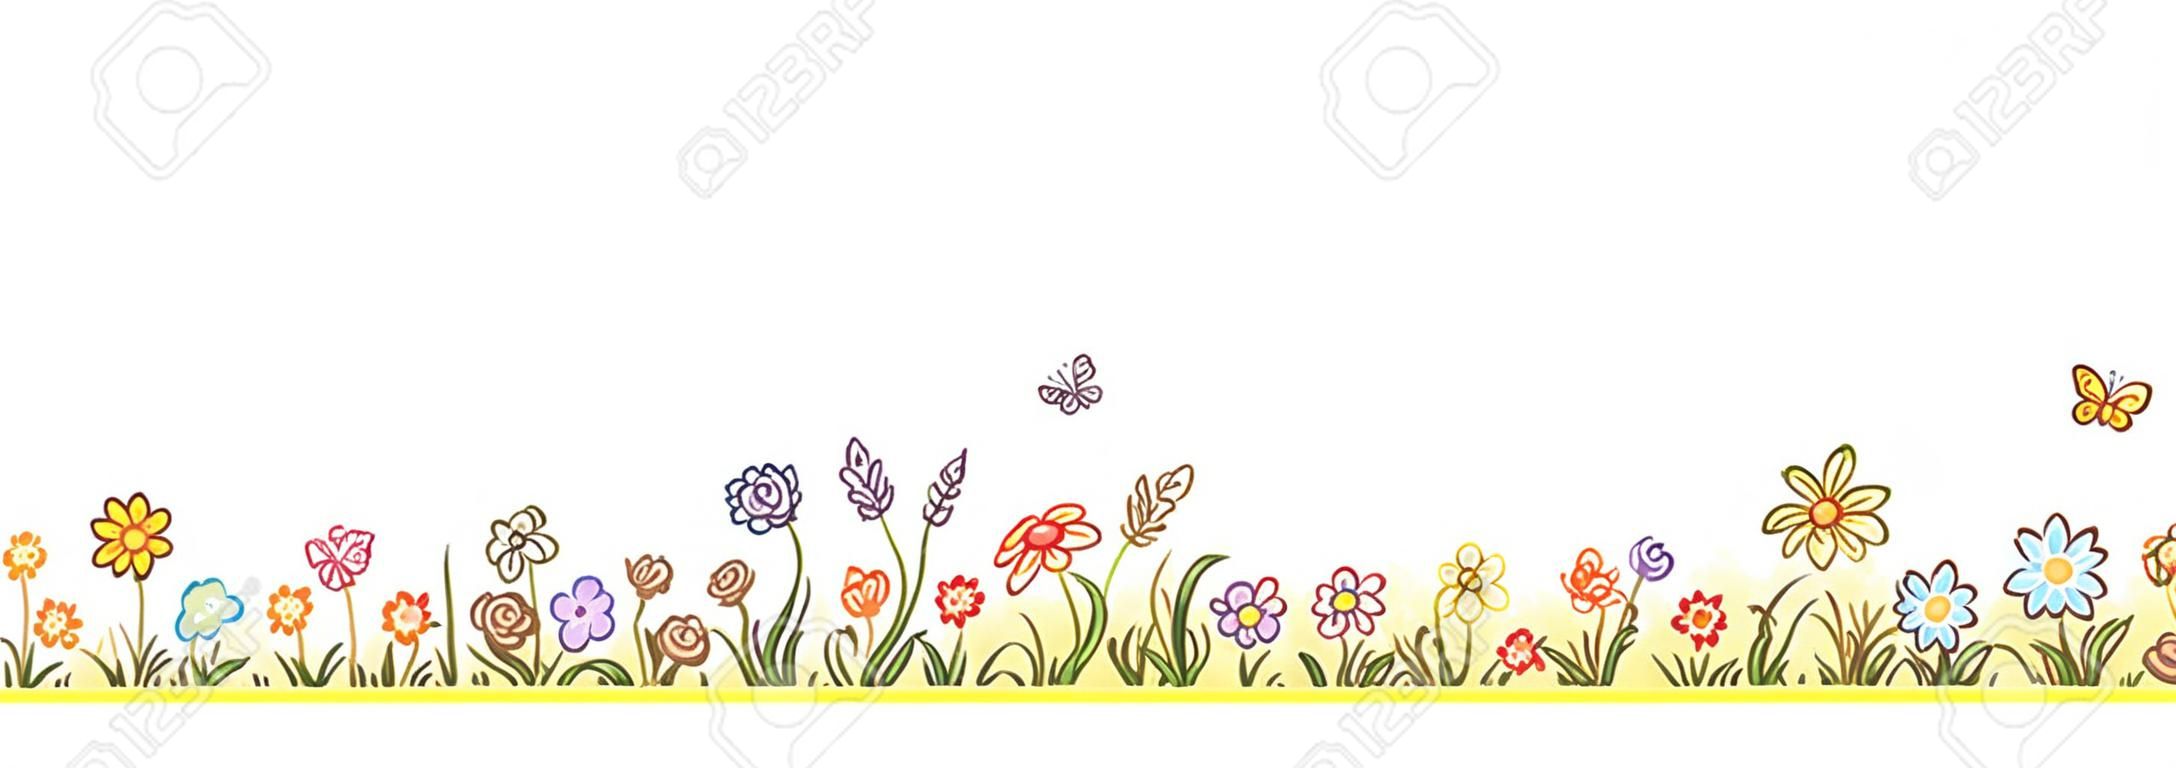 Kolorowe kwiat granicy z mnóstwem kreskówki kwiatów, trawy i motyli, nie gradienty